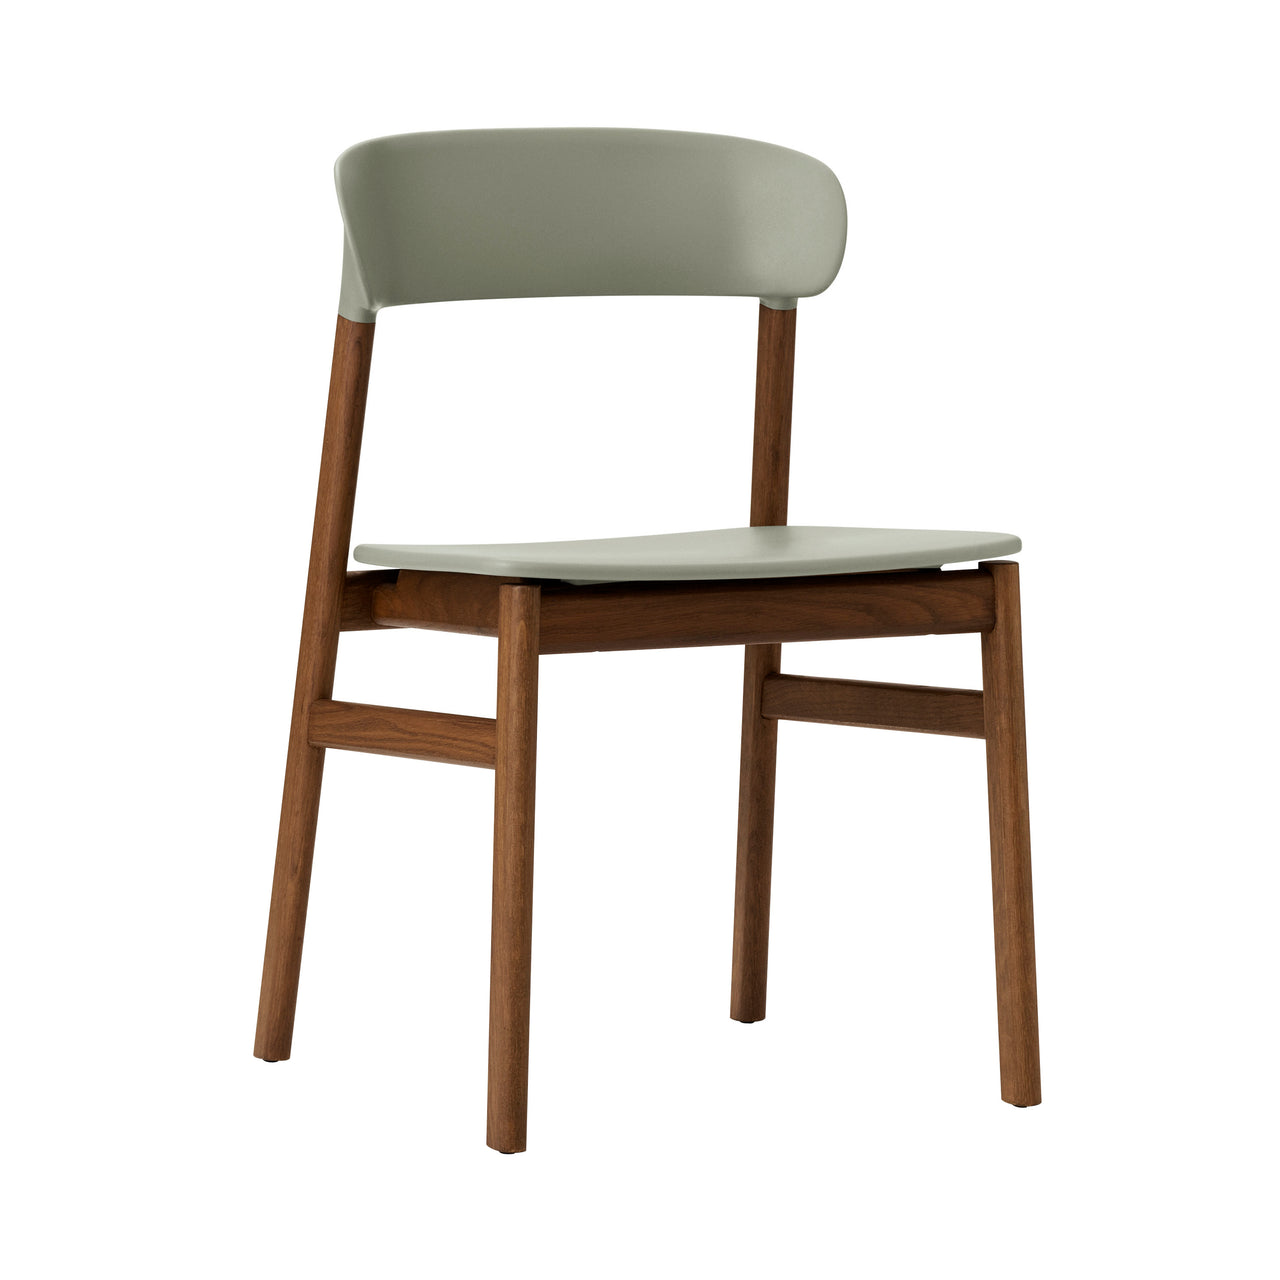 Herit Chair: Smoked Oak + Dusty Green